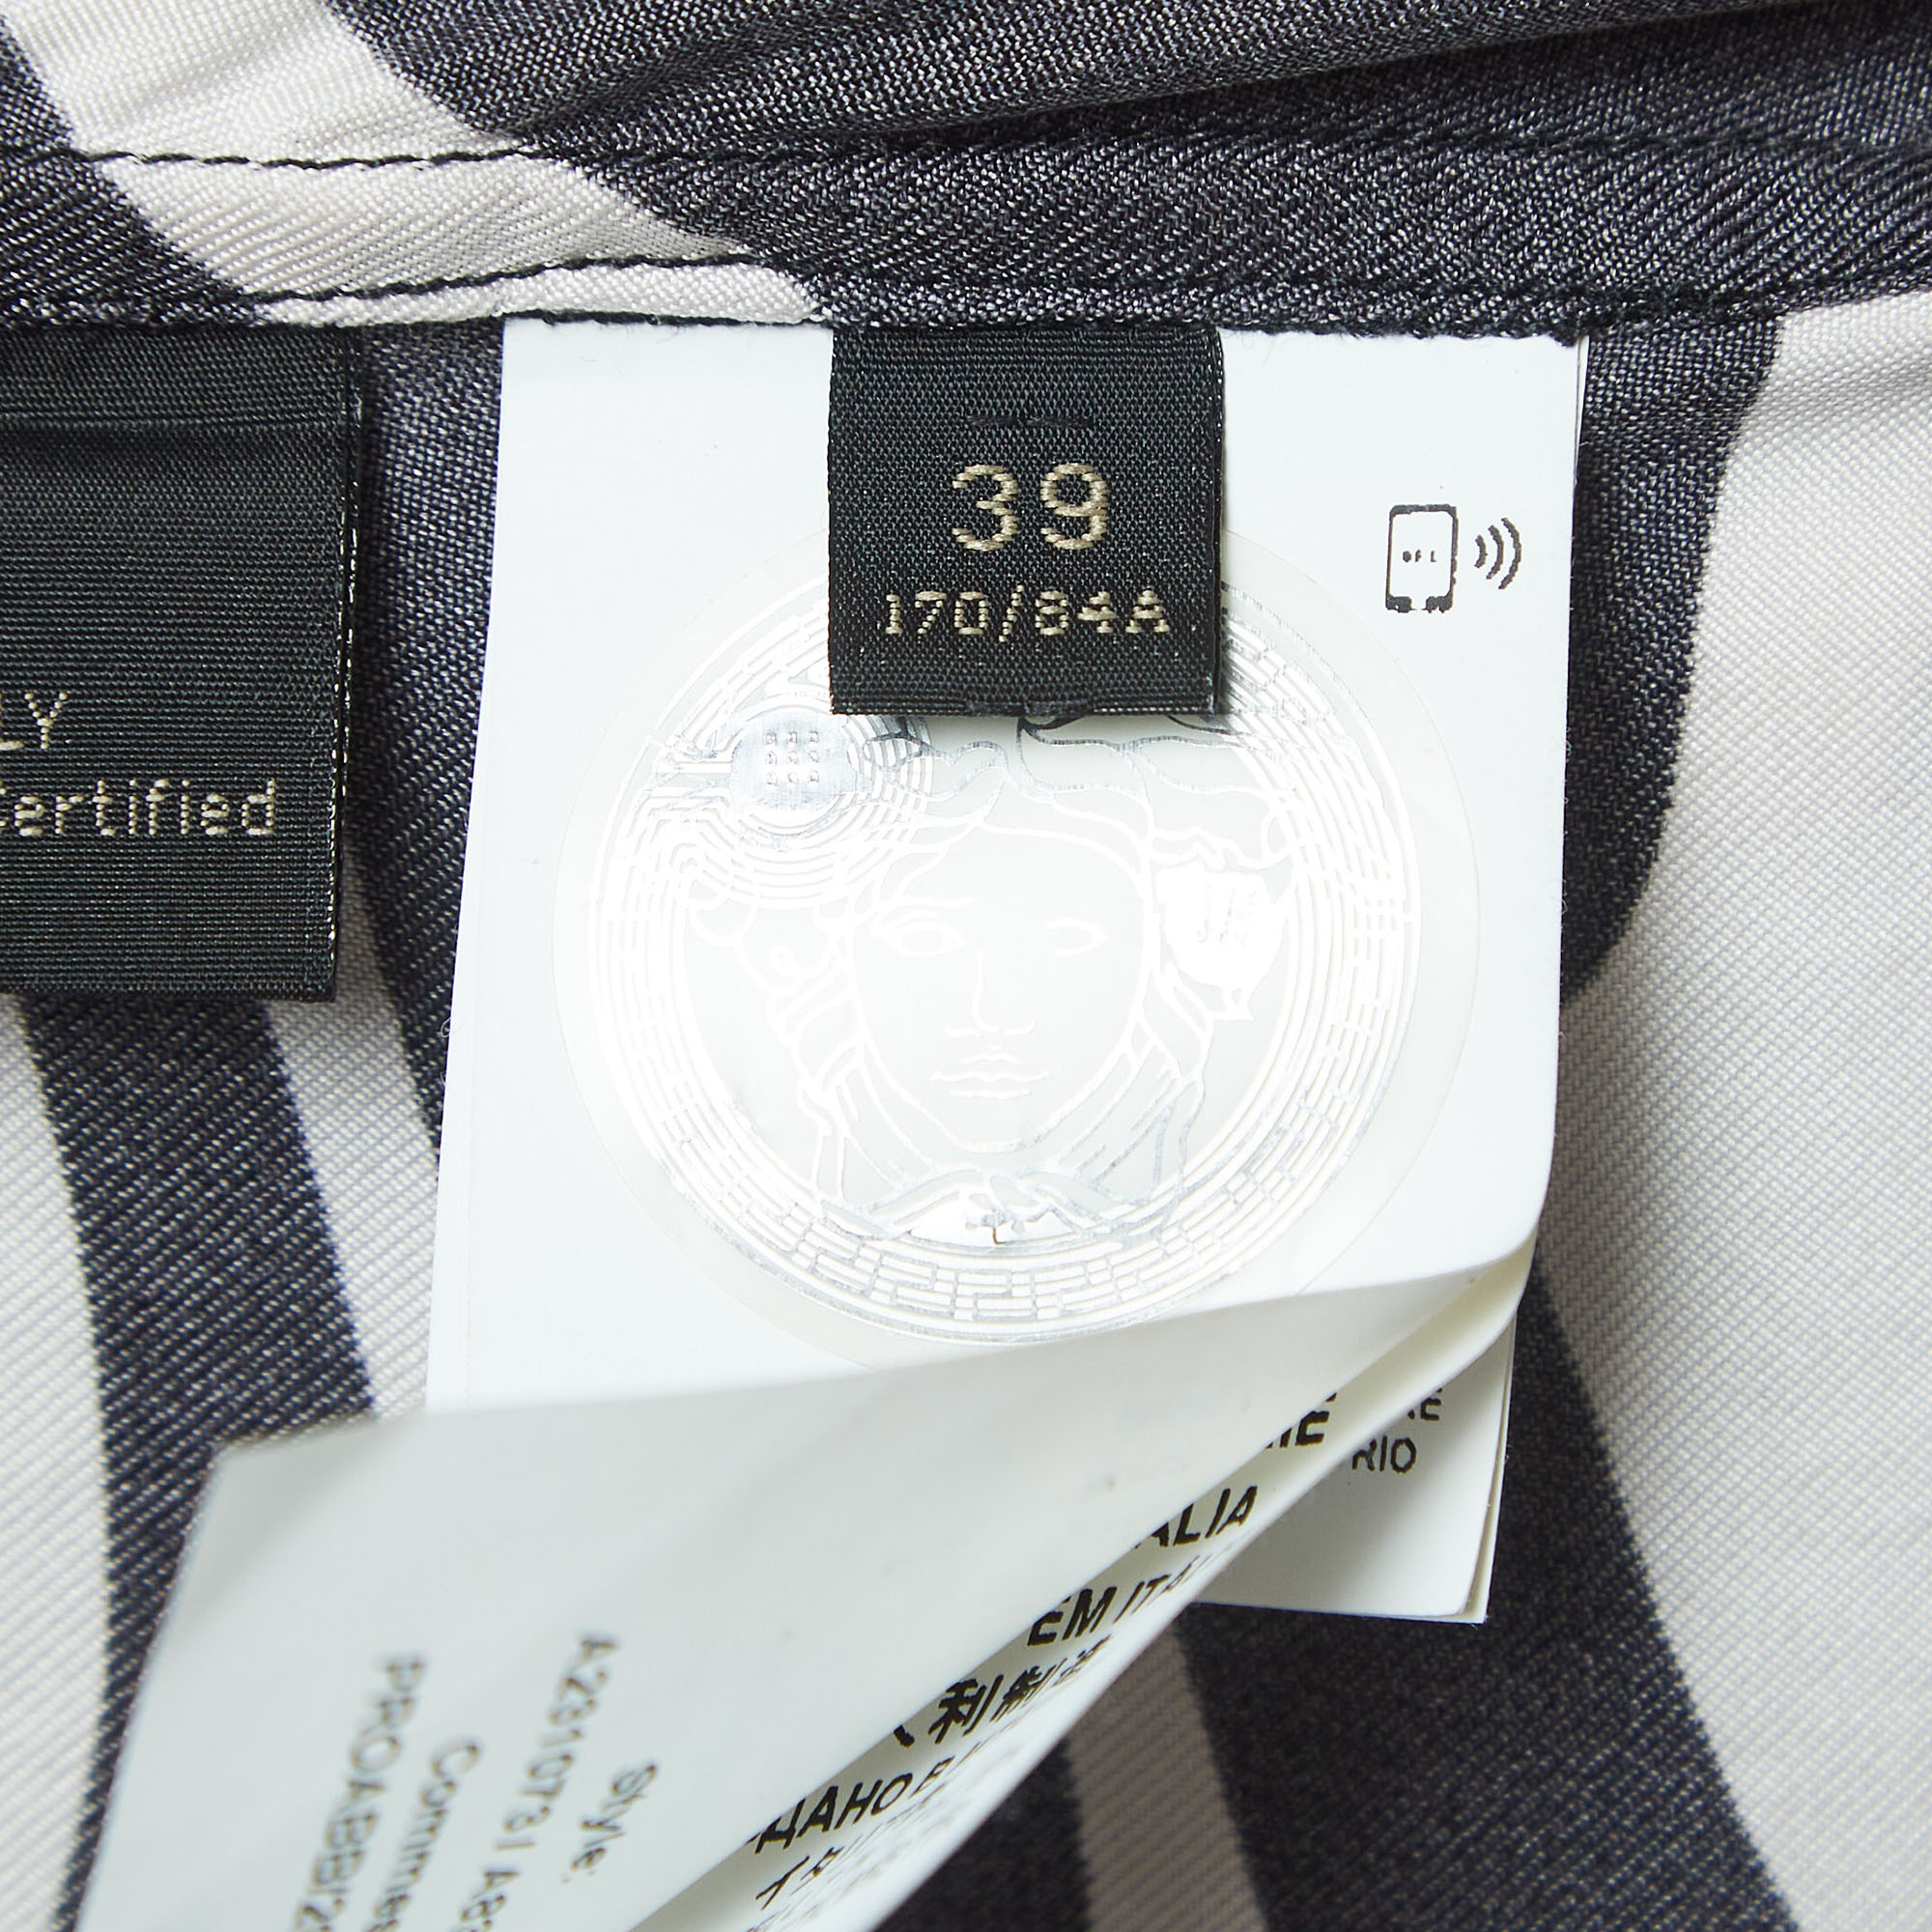 Versace Black Zebra/Giraffe Print Silk Button Front Full Sleeve Shirt M